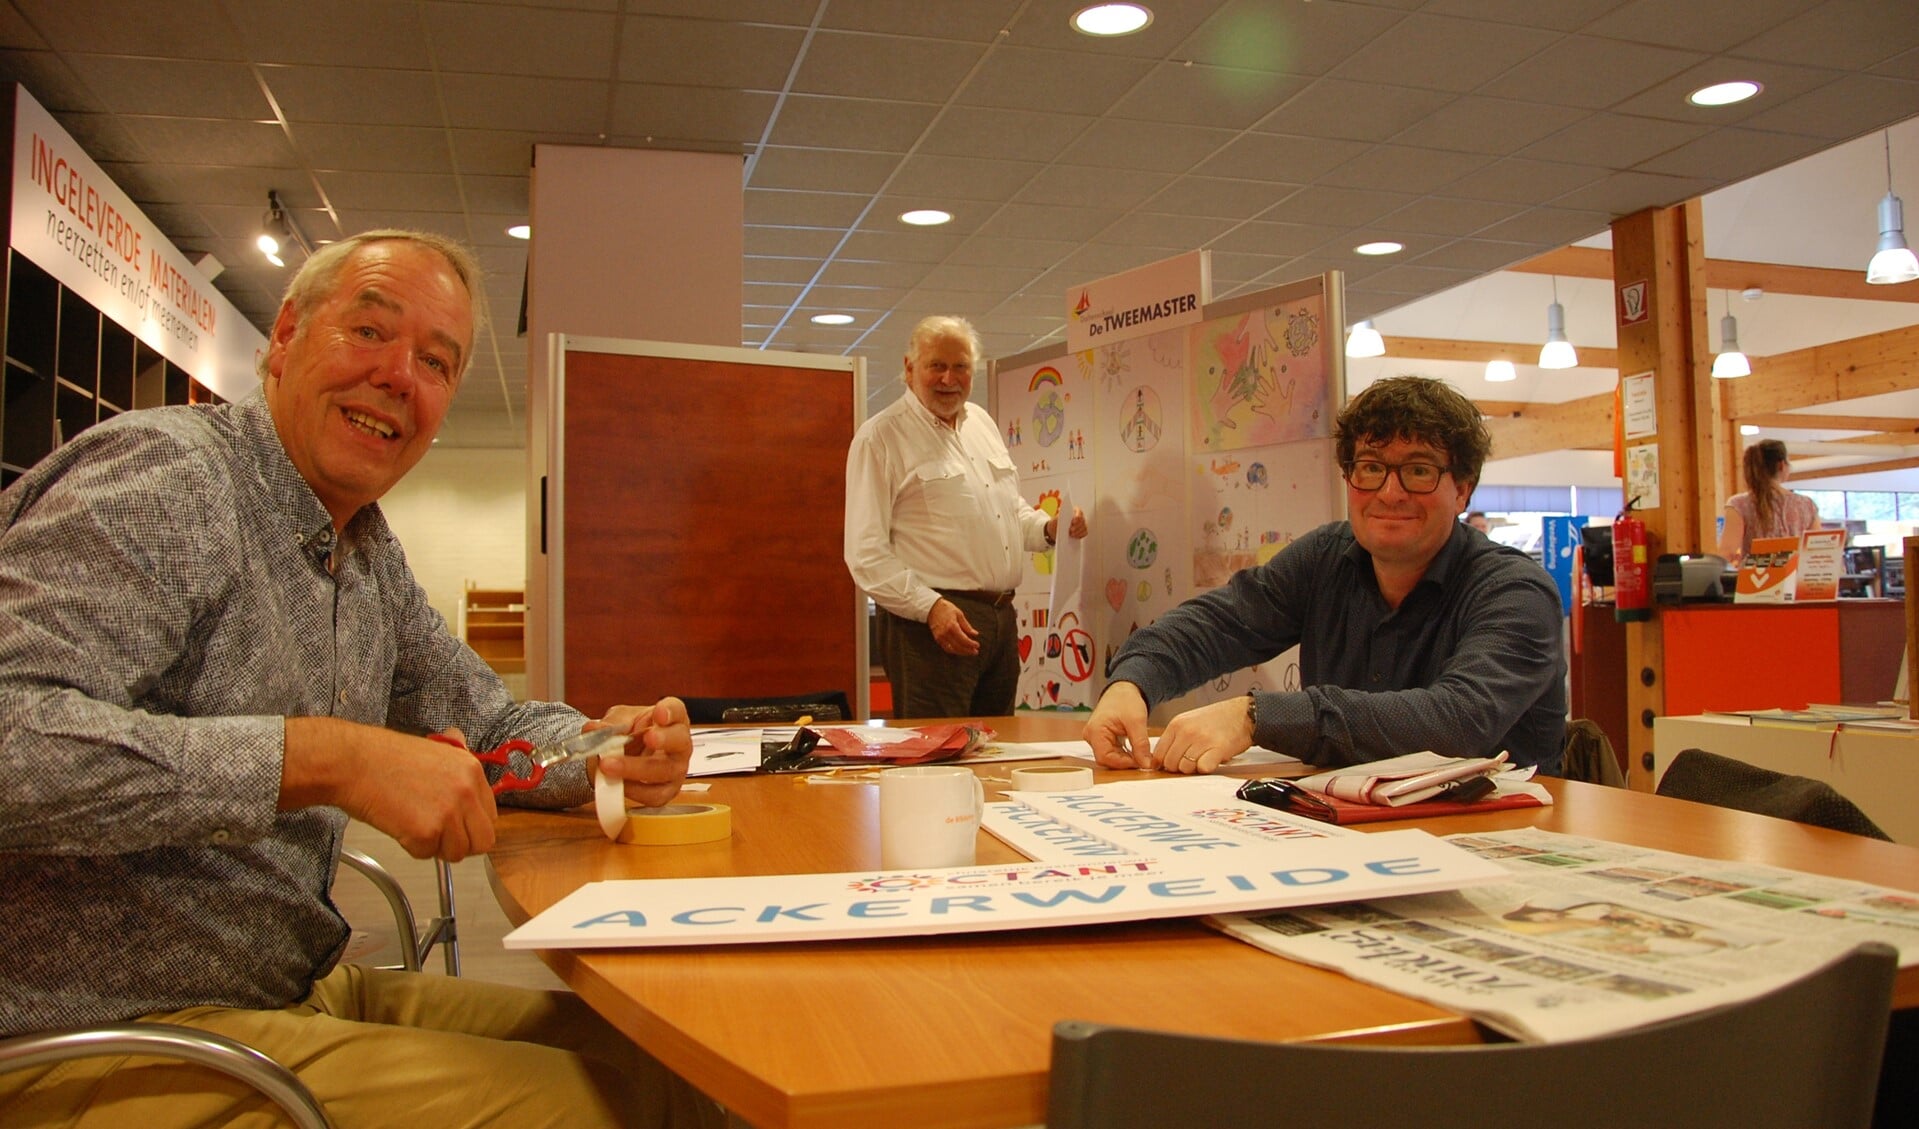 Het projectteam van Lionsclub Pijnacker-Nootdorp was maandag druk bezig met het opstellen van de expositie van de vredesposters. Met van links naar rechts, Herman van Atten, Jan Vincenten en Ron van Riet.